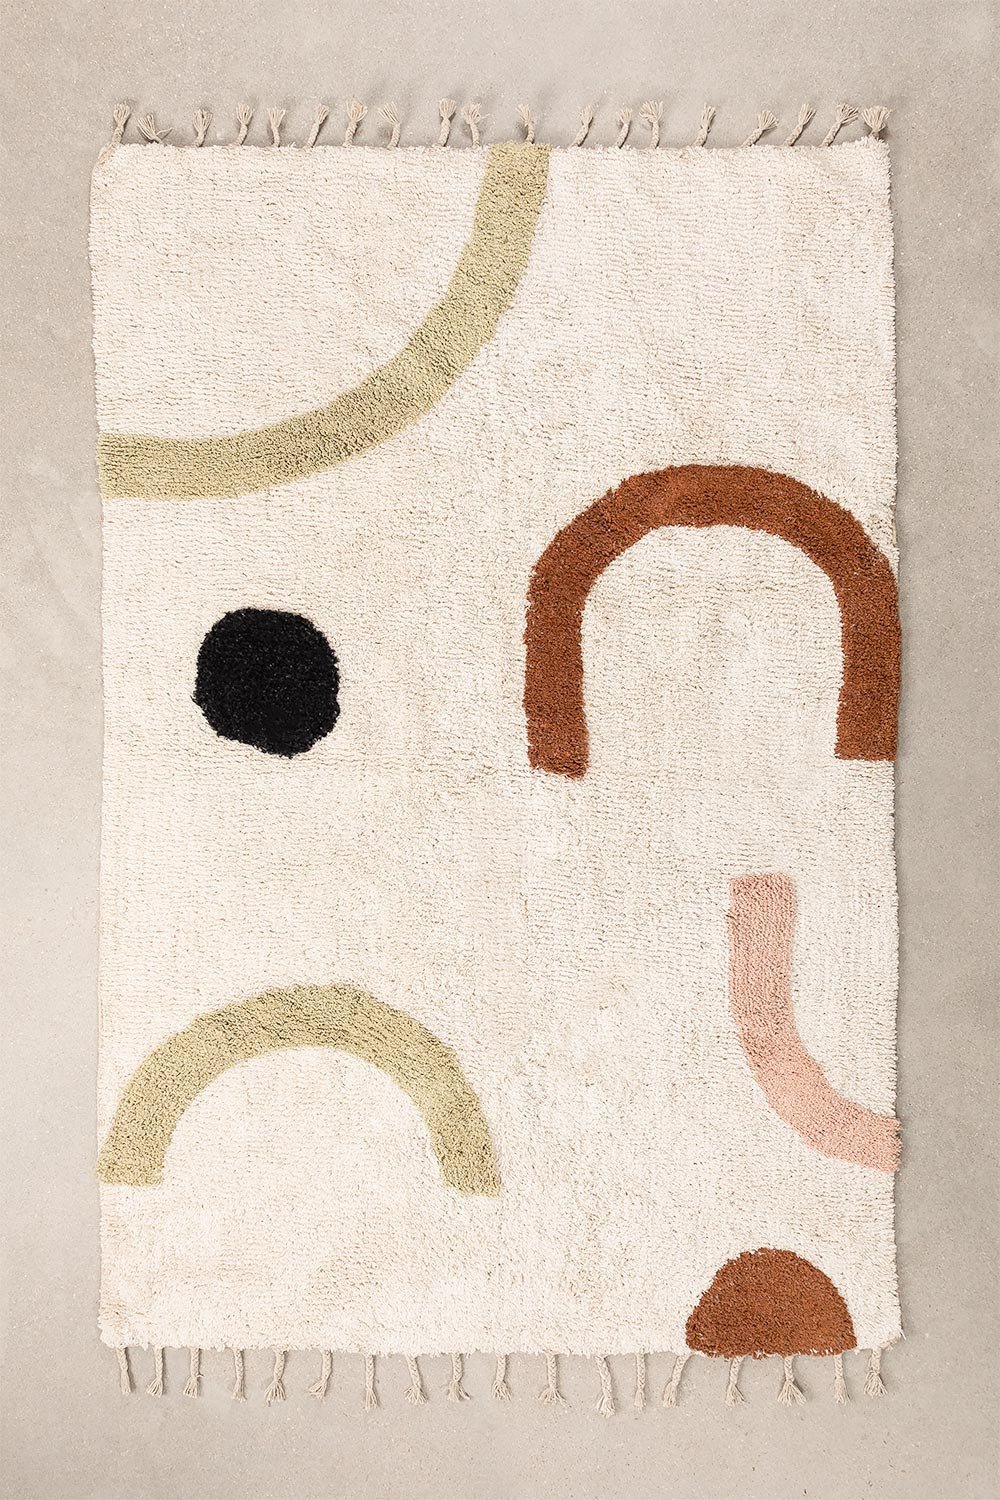 Katoenen vloerkleed (206x130 cm) Ebre, galerij beeld 1